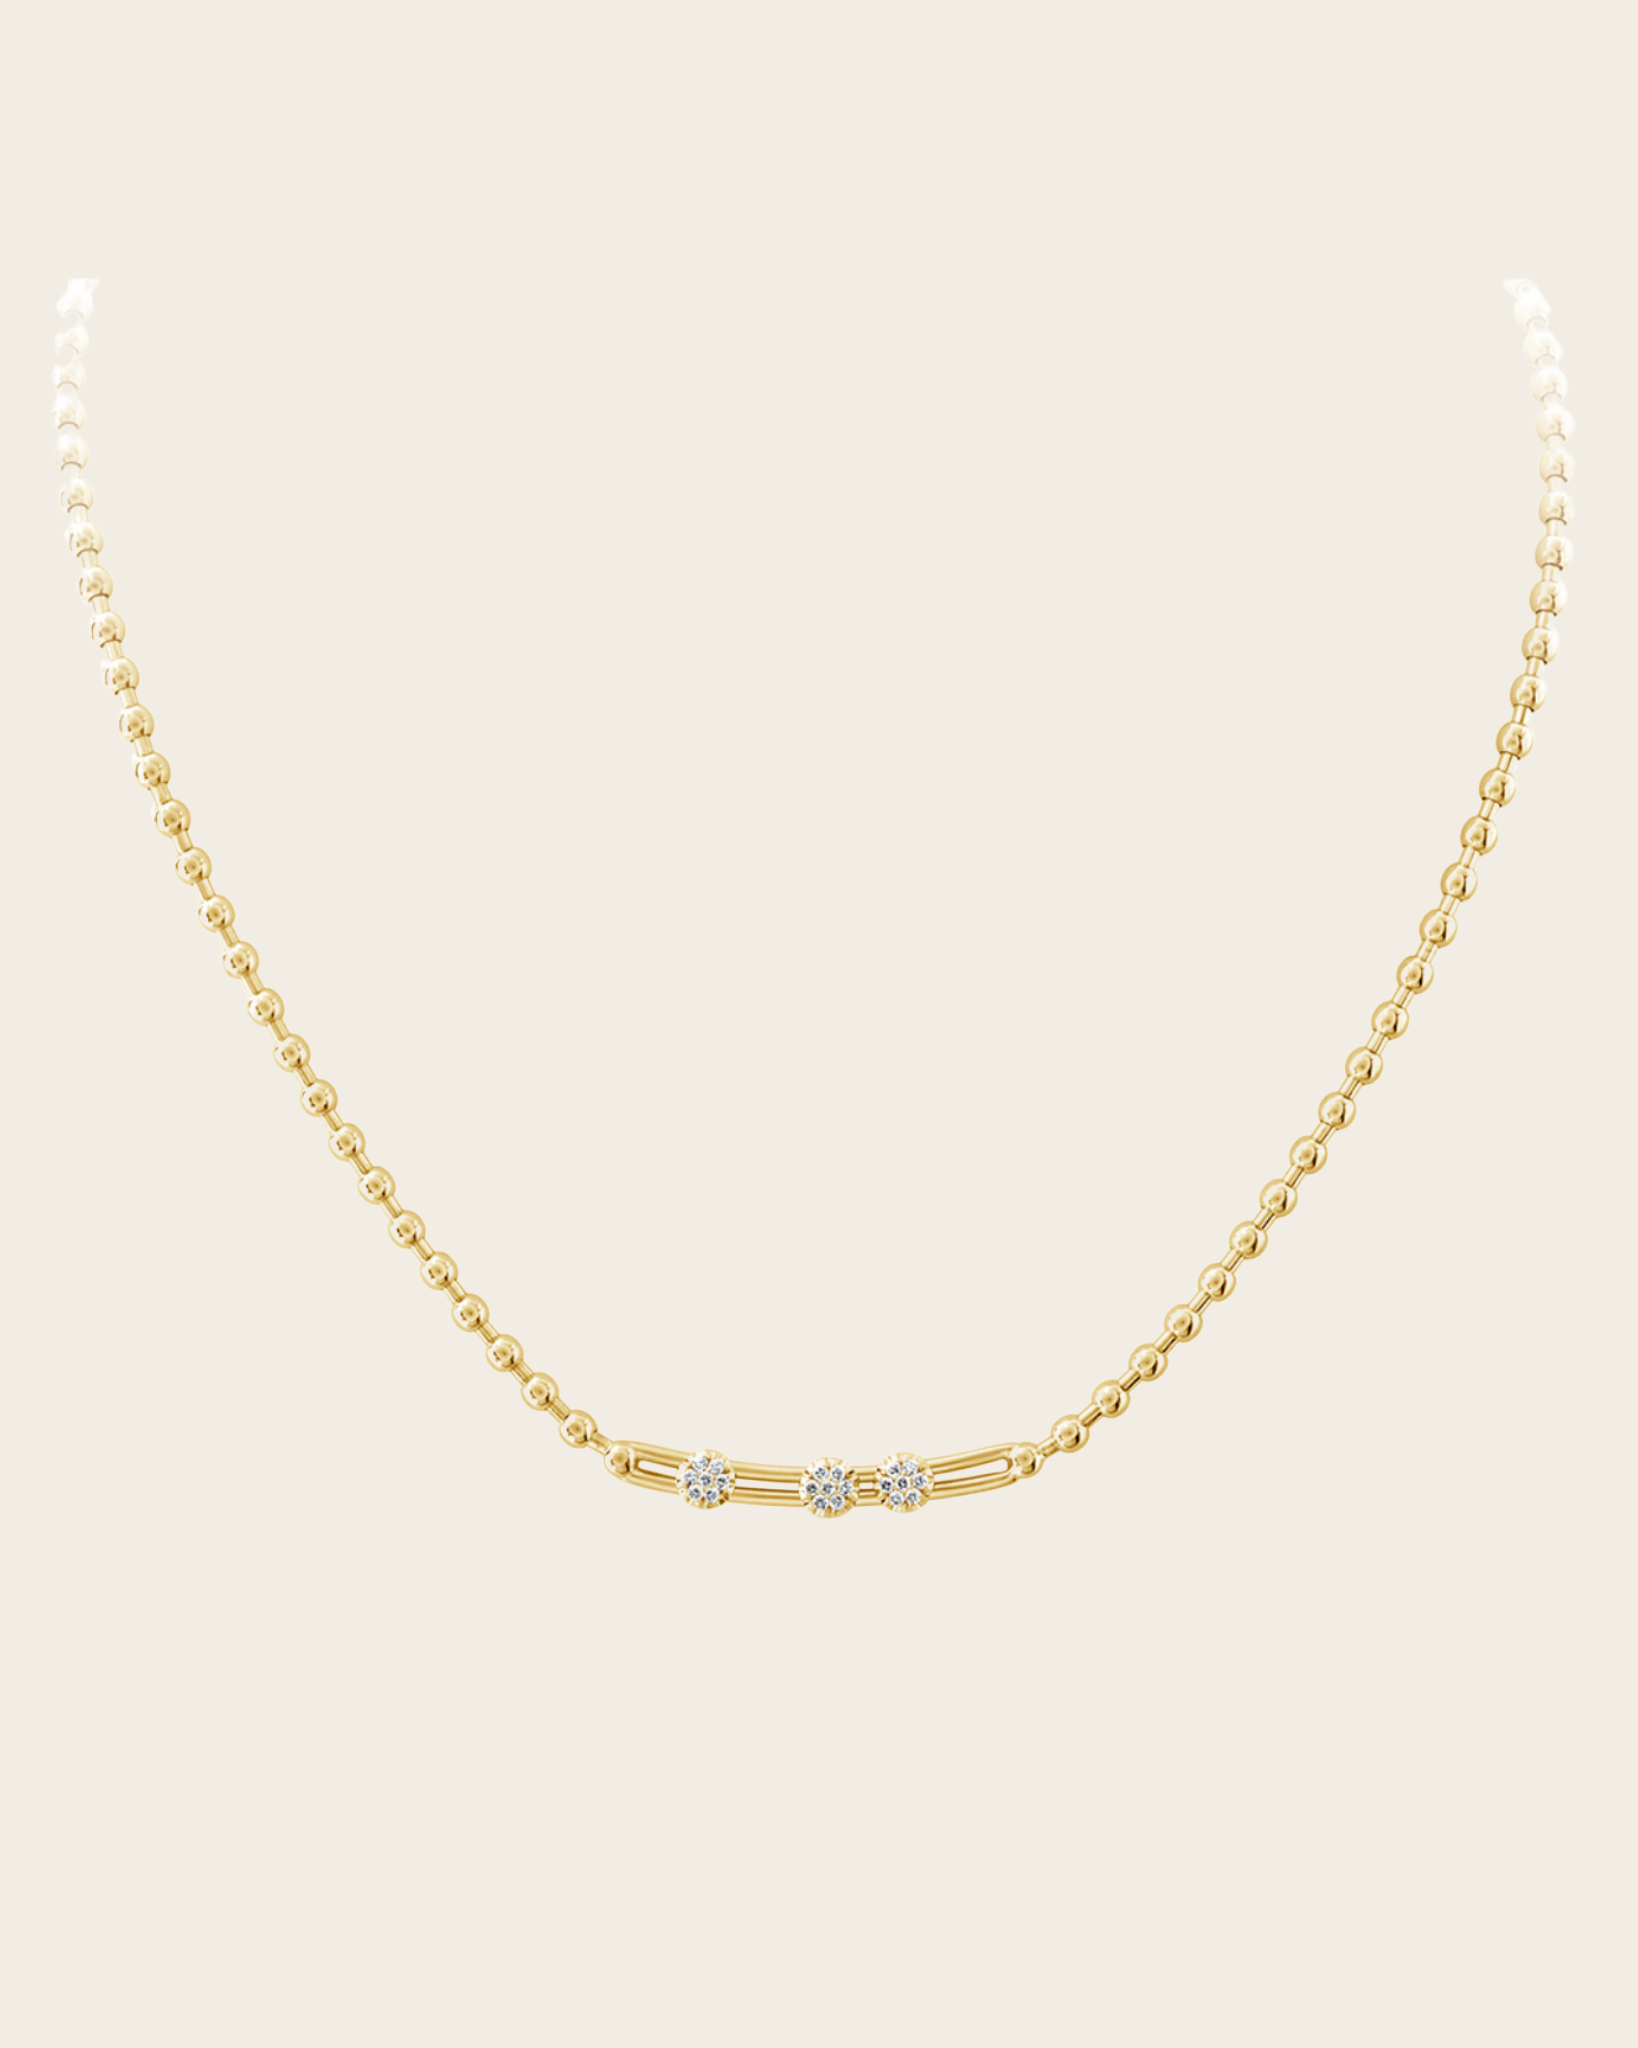 Hulchi Belluni's Tresore Collection Diamond Necklace